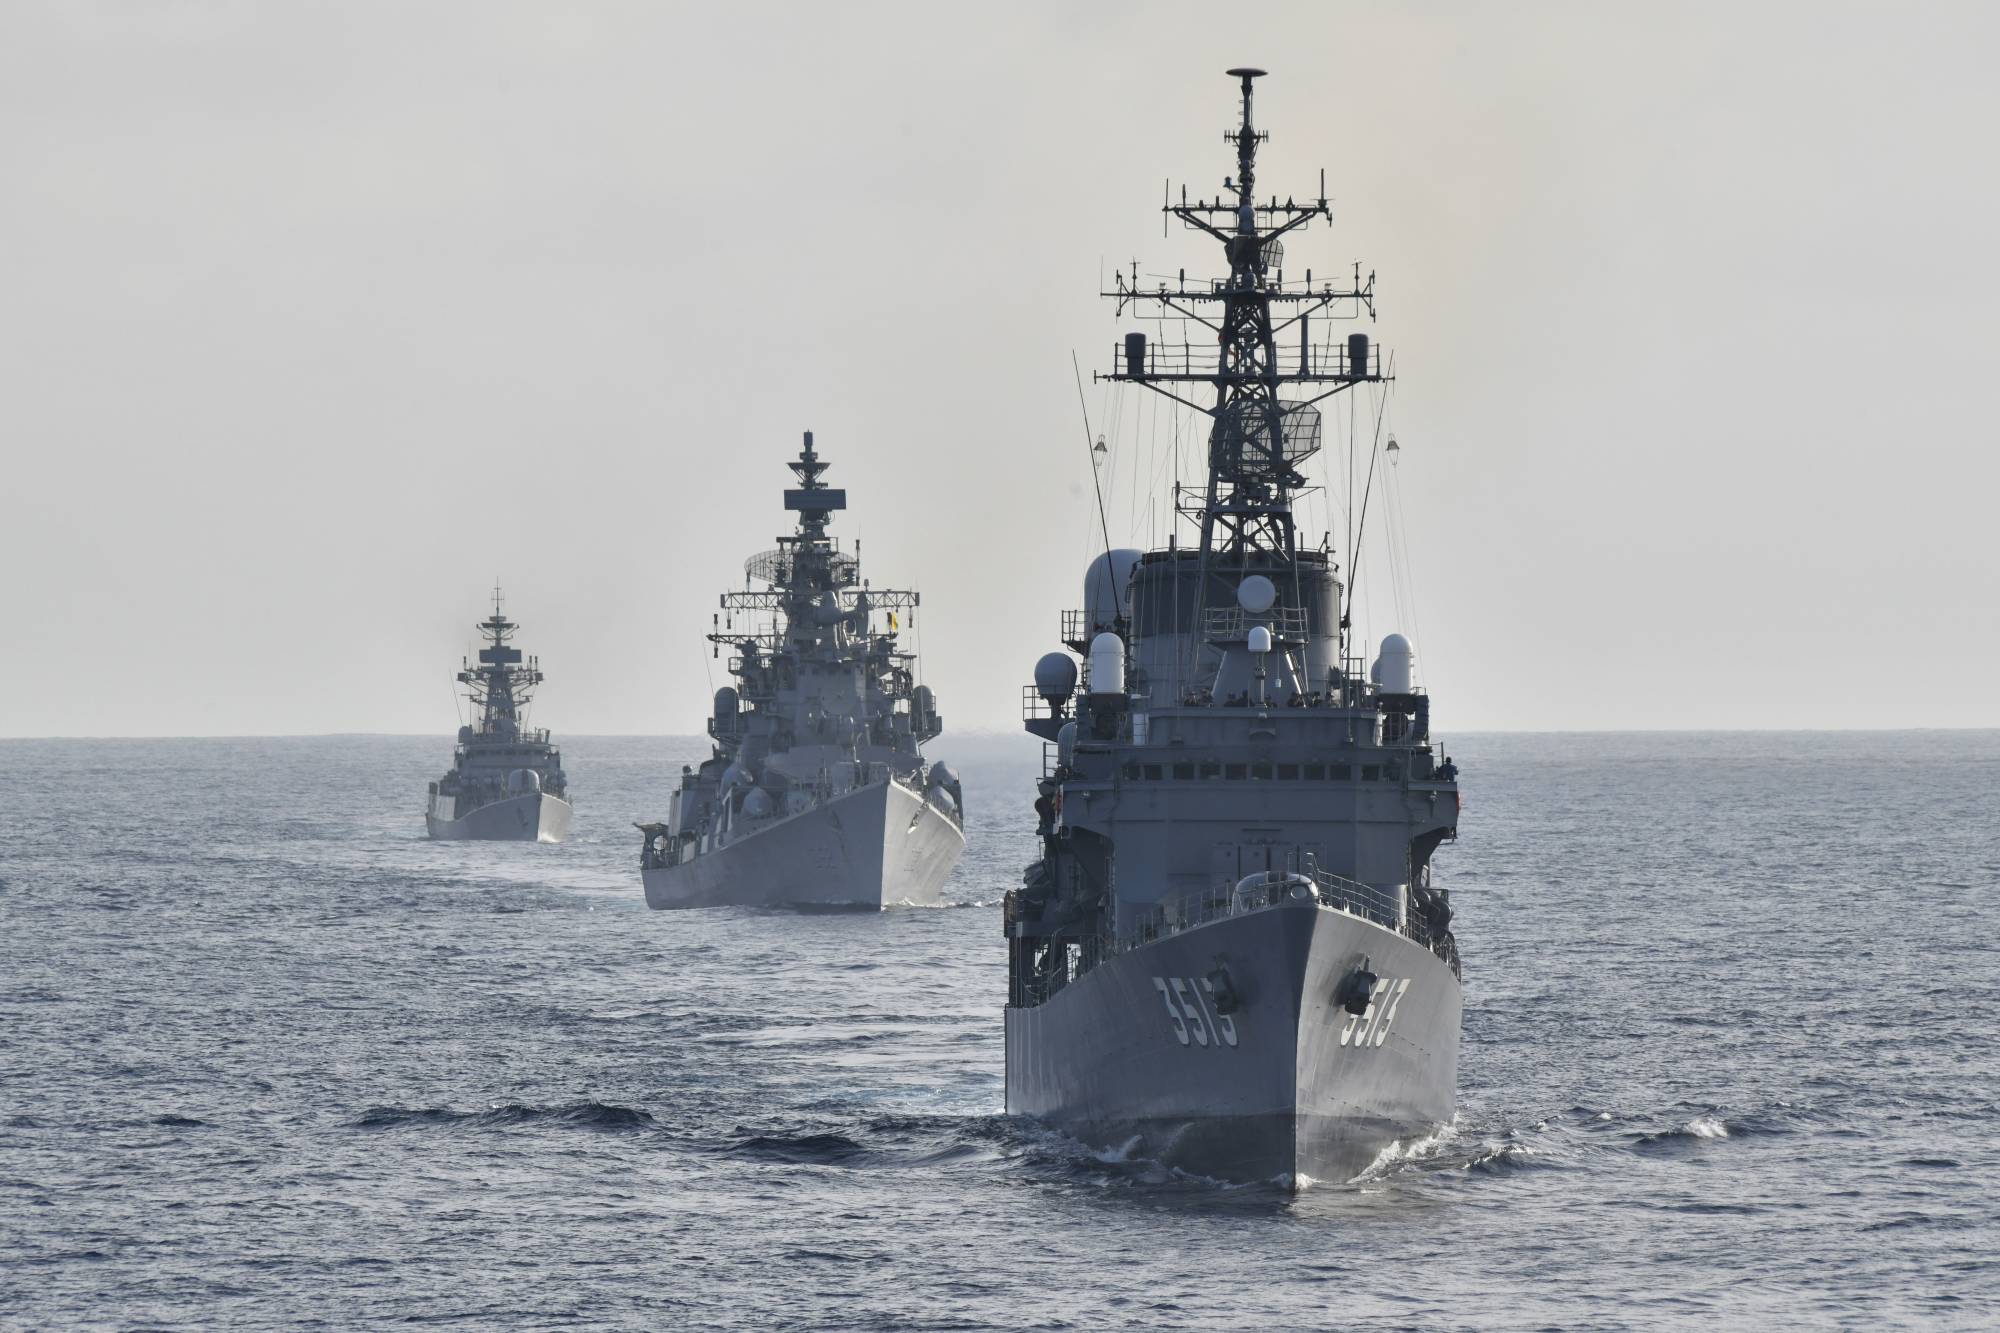 Các tàu chiến Ấn Độ và Nhật Bản tham gia tập trận ở Ấn Độ Dương giữa bối cảnh căng thẳng biên giới Trung - Ấn gia tăng. Ảnh: Lực lượng phòng vệ hàng hải Nhật Bản